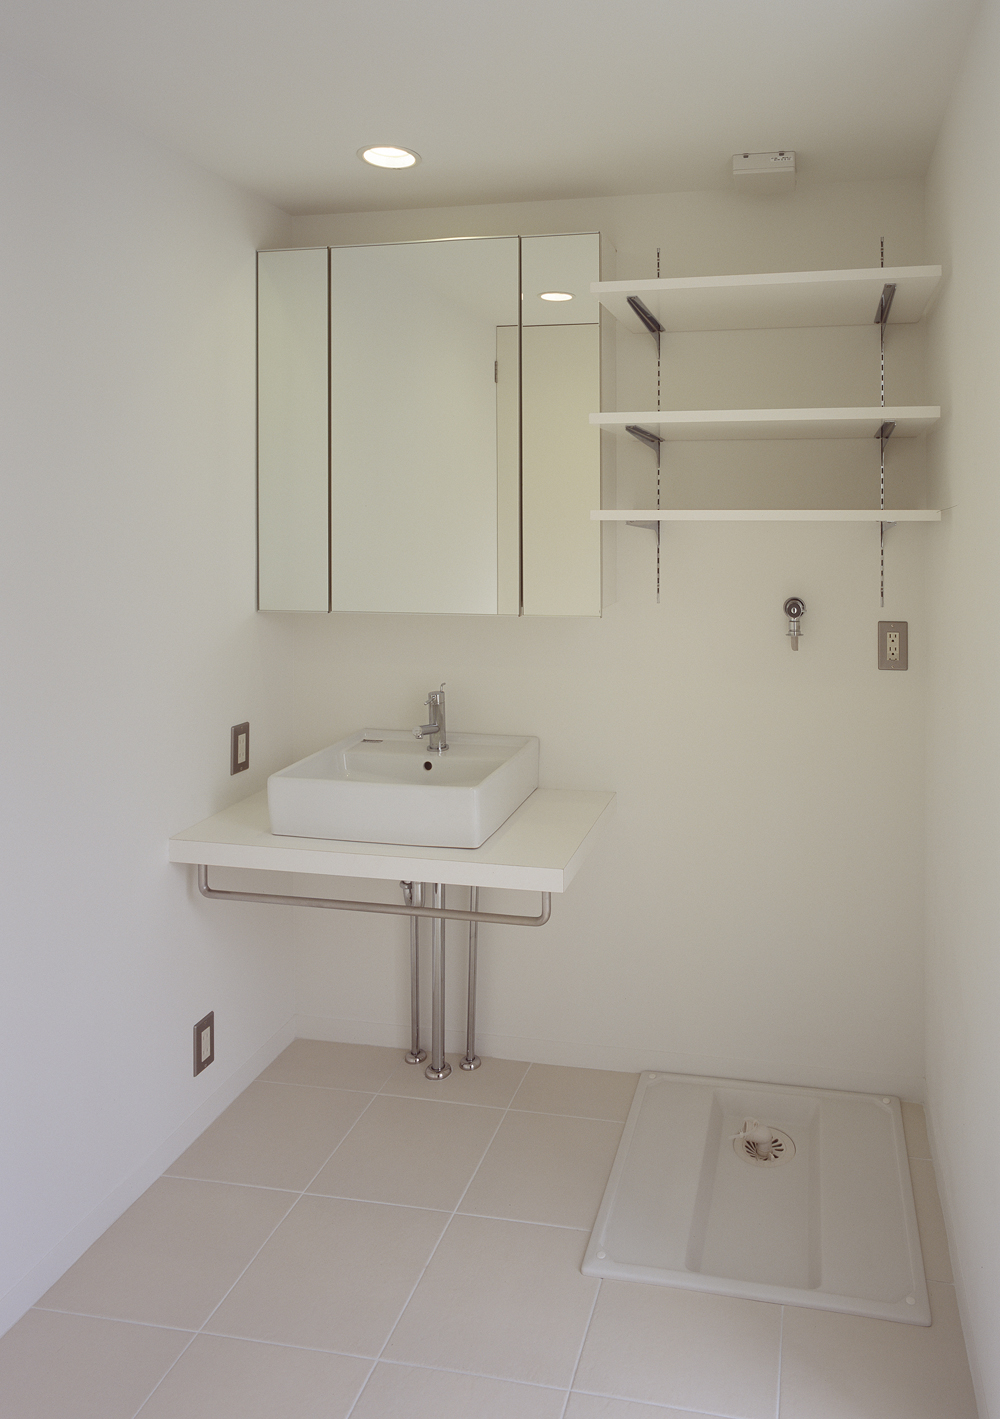 バスルームと同じ白い床タイルを使用した、コンパクトにまとめた洗面所